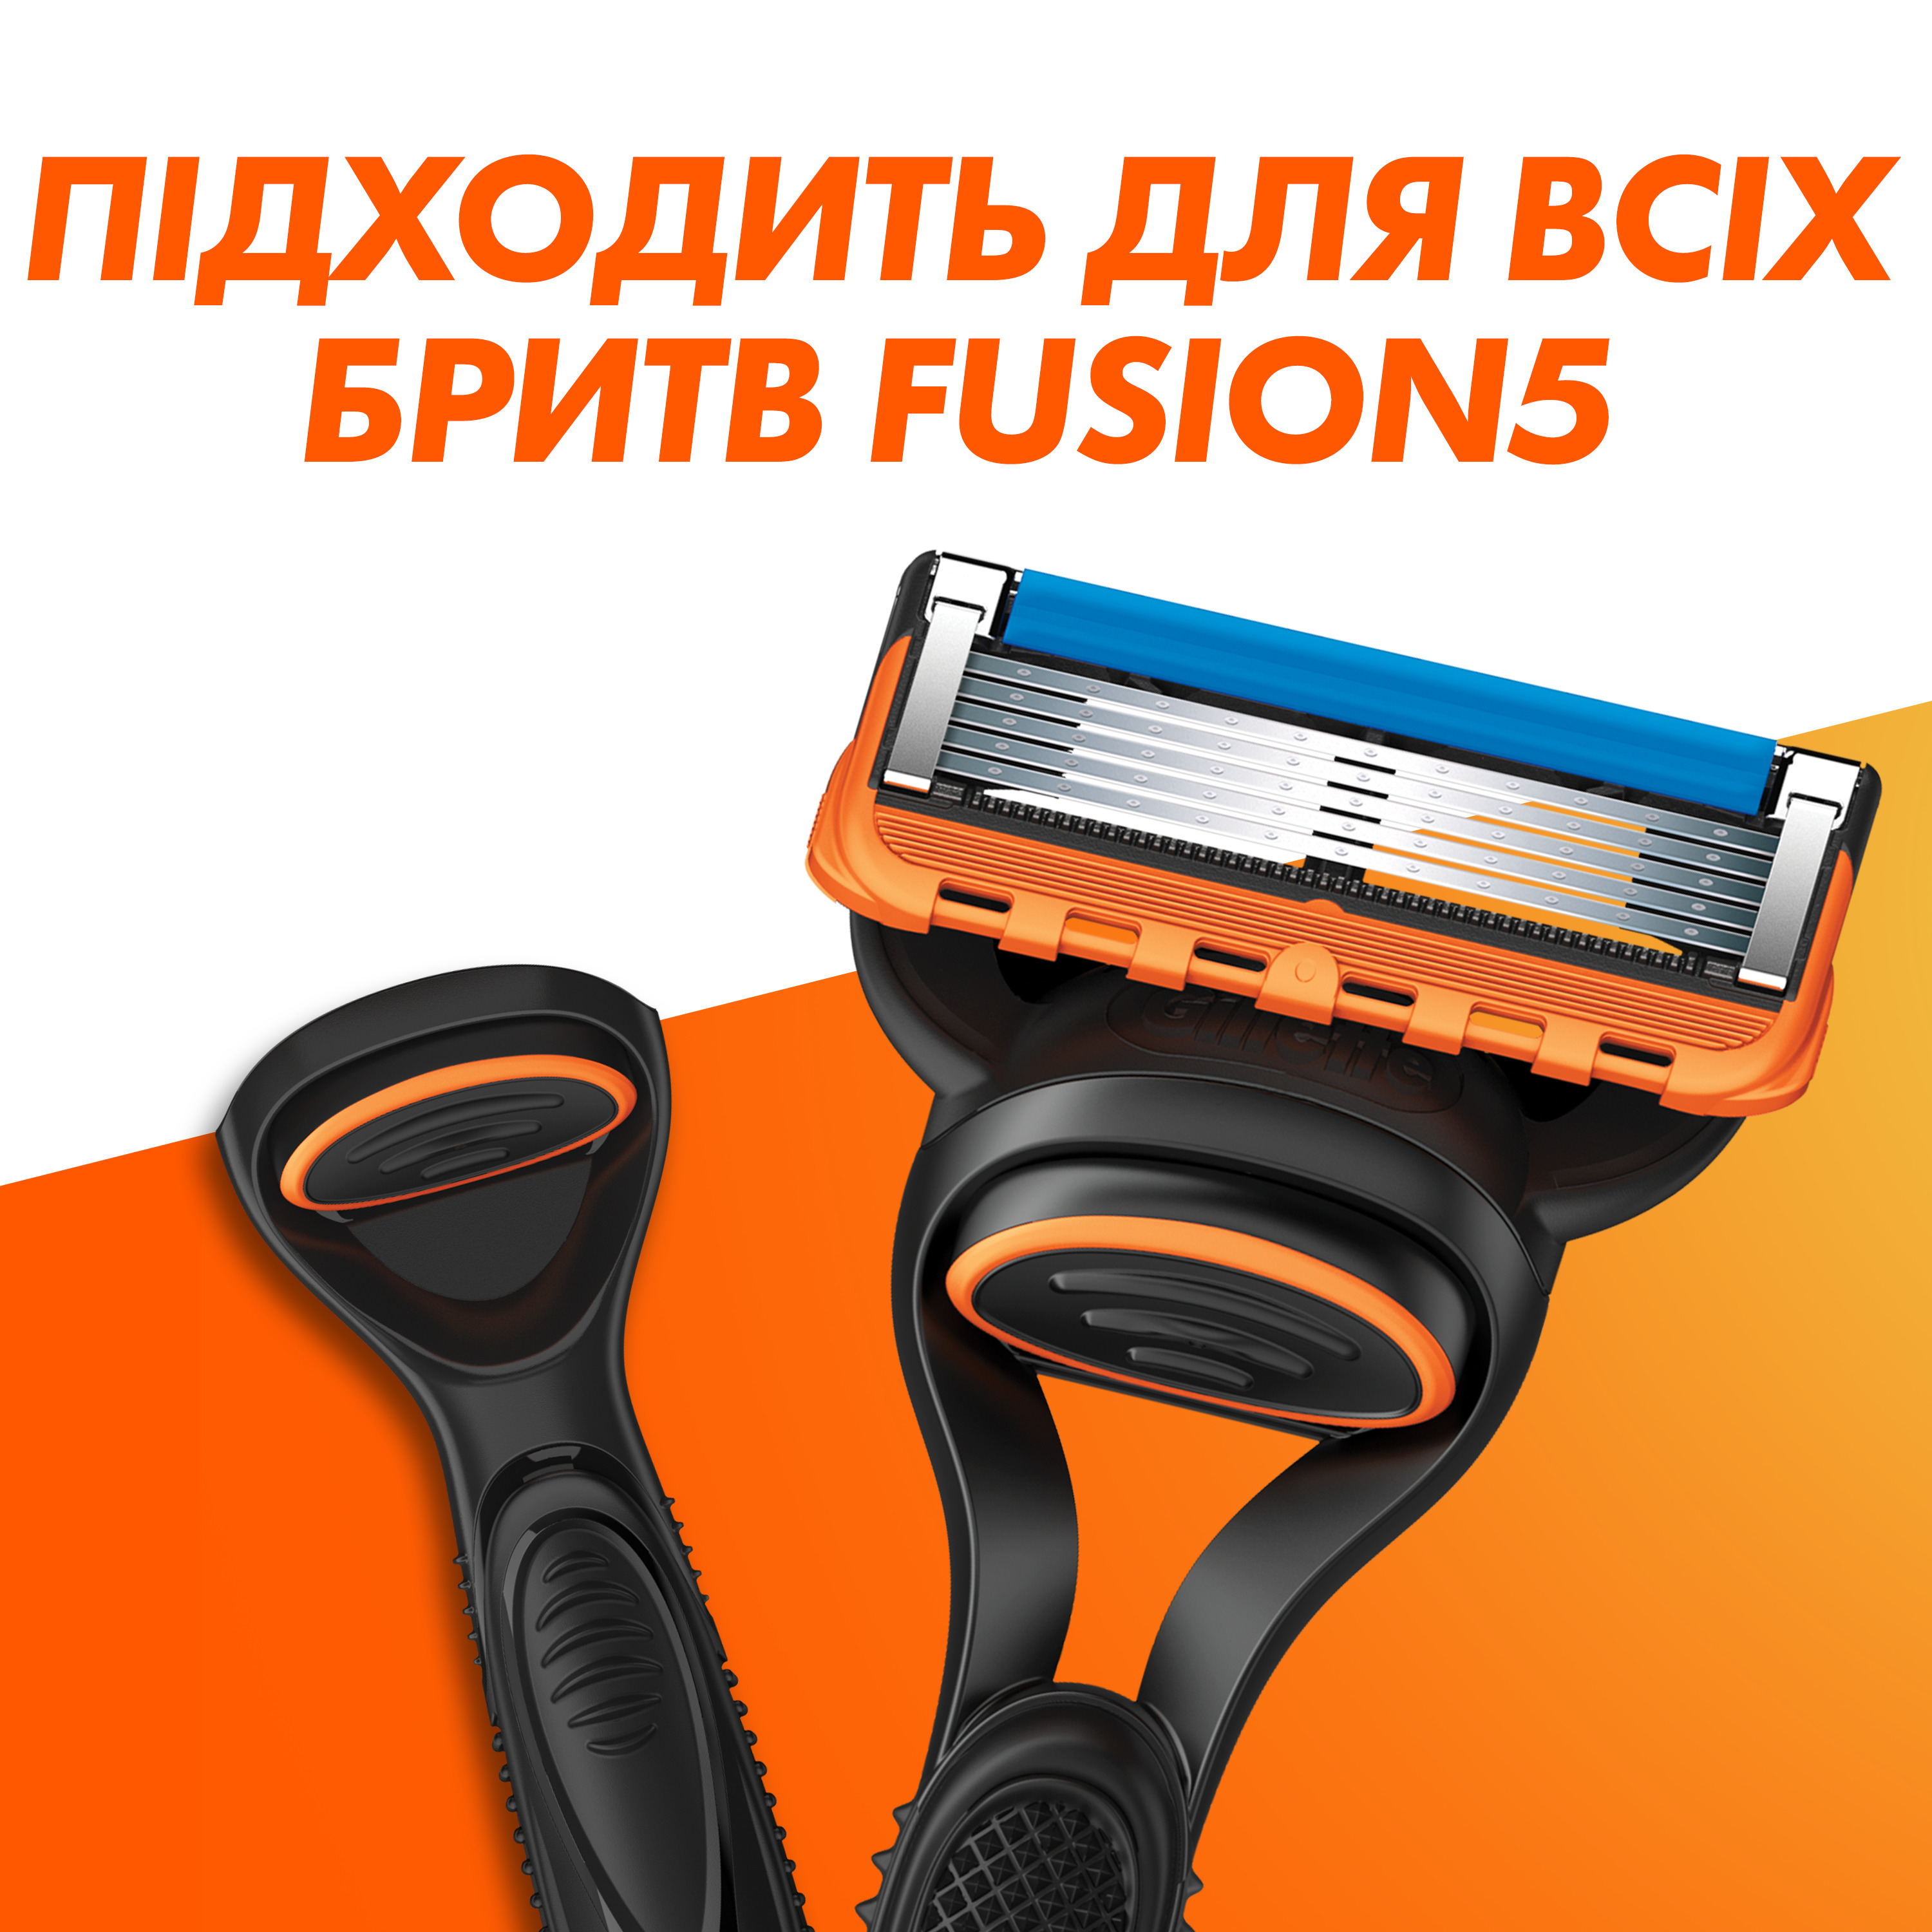 Сменные картриджи для бритья Gillette Fusion5, 4 шт - фото 6